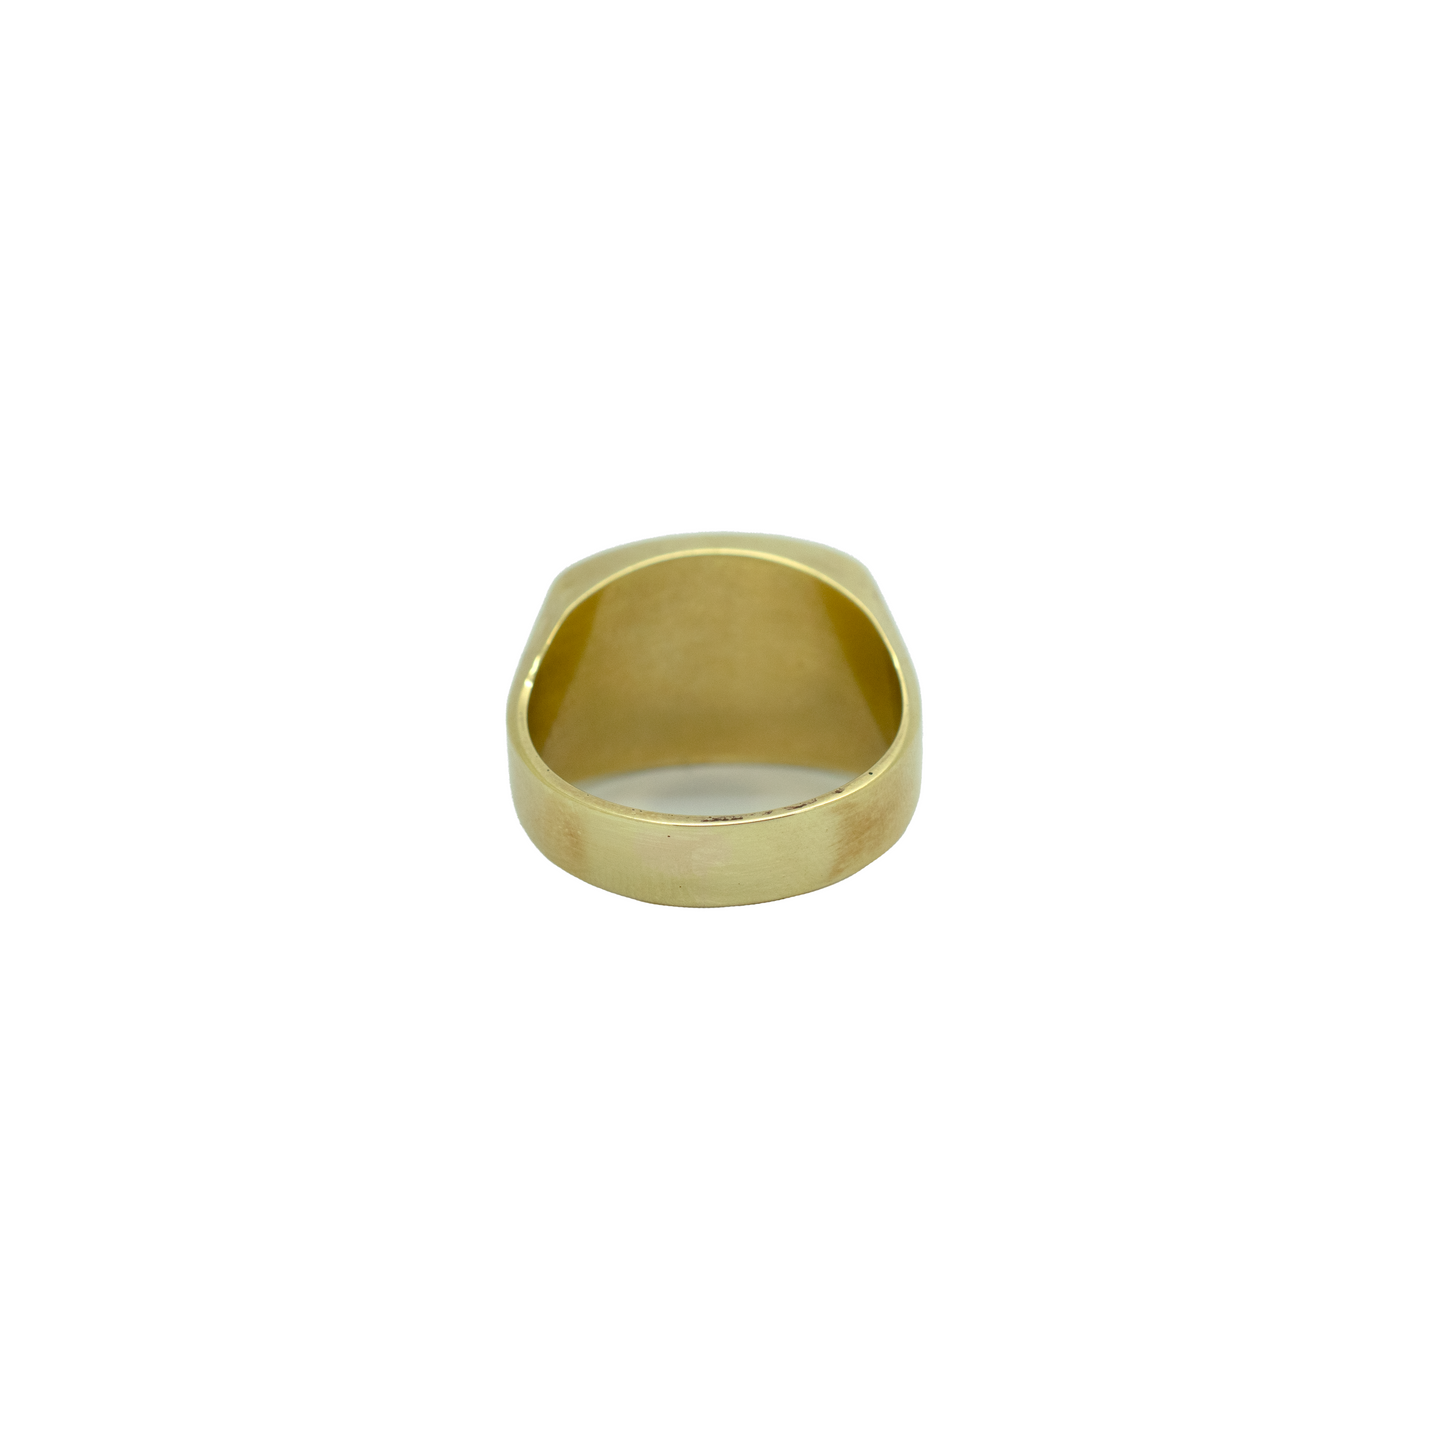 14k Gold Onyx Stone Ring